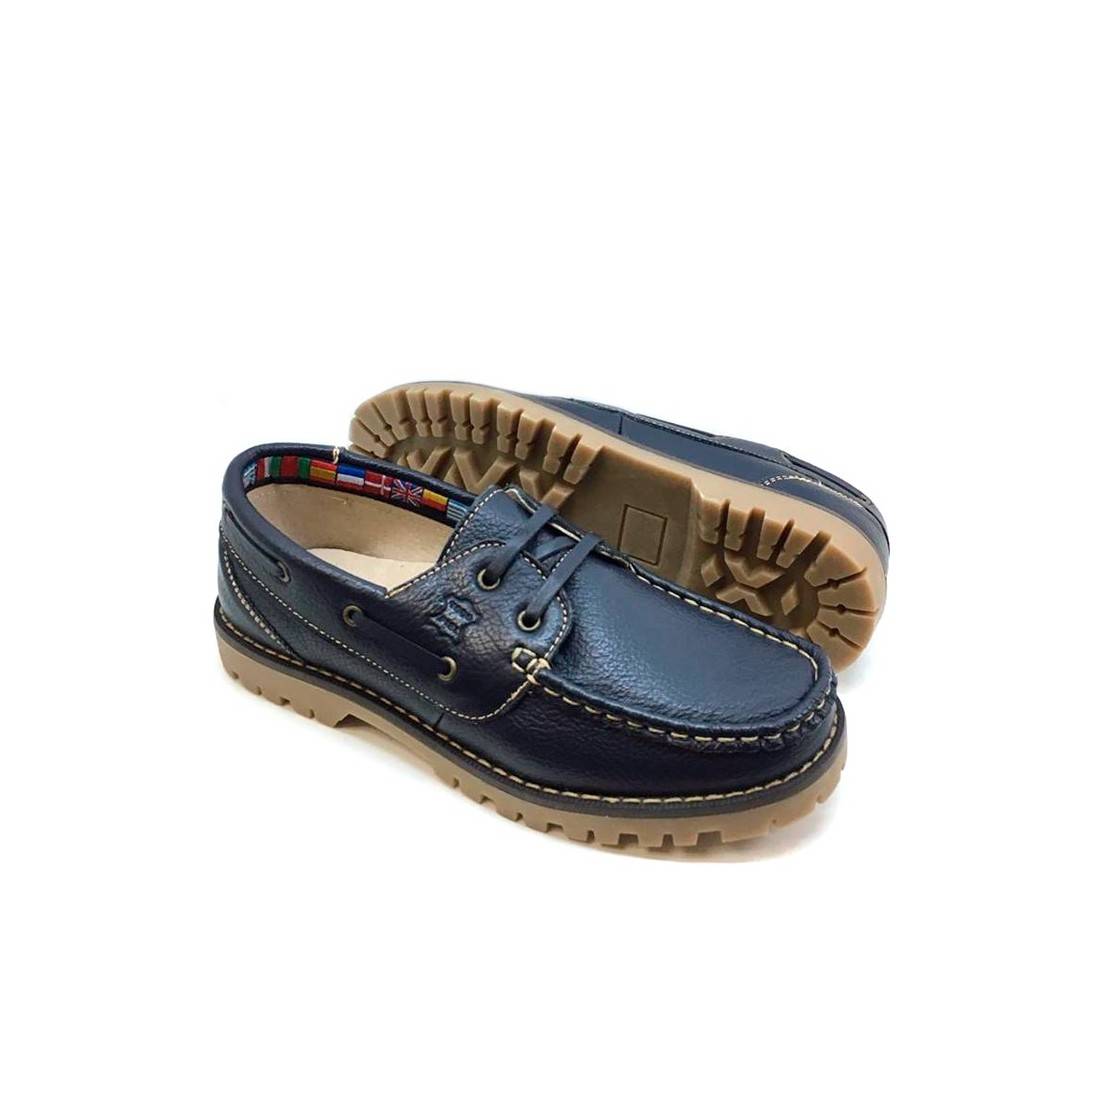 Zapatos Náuticos de Niño Azul con cordones